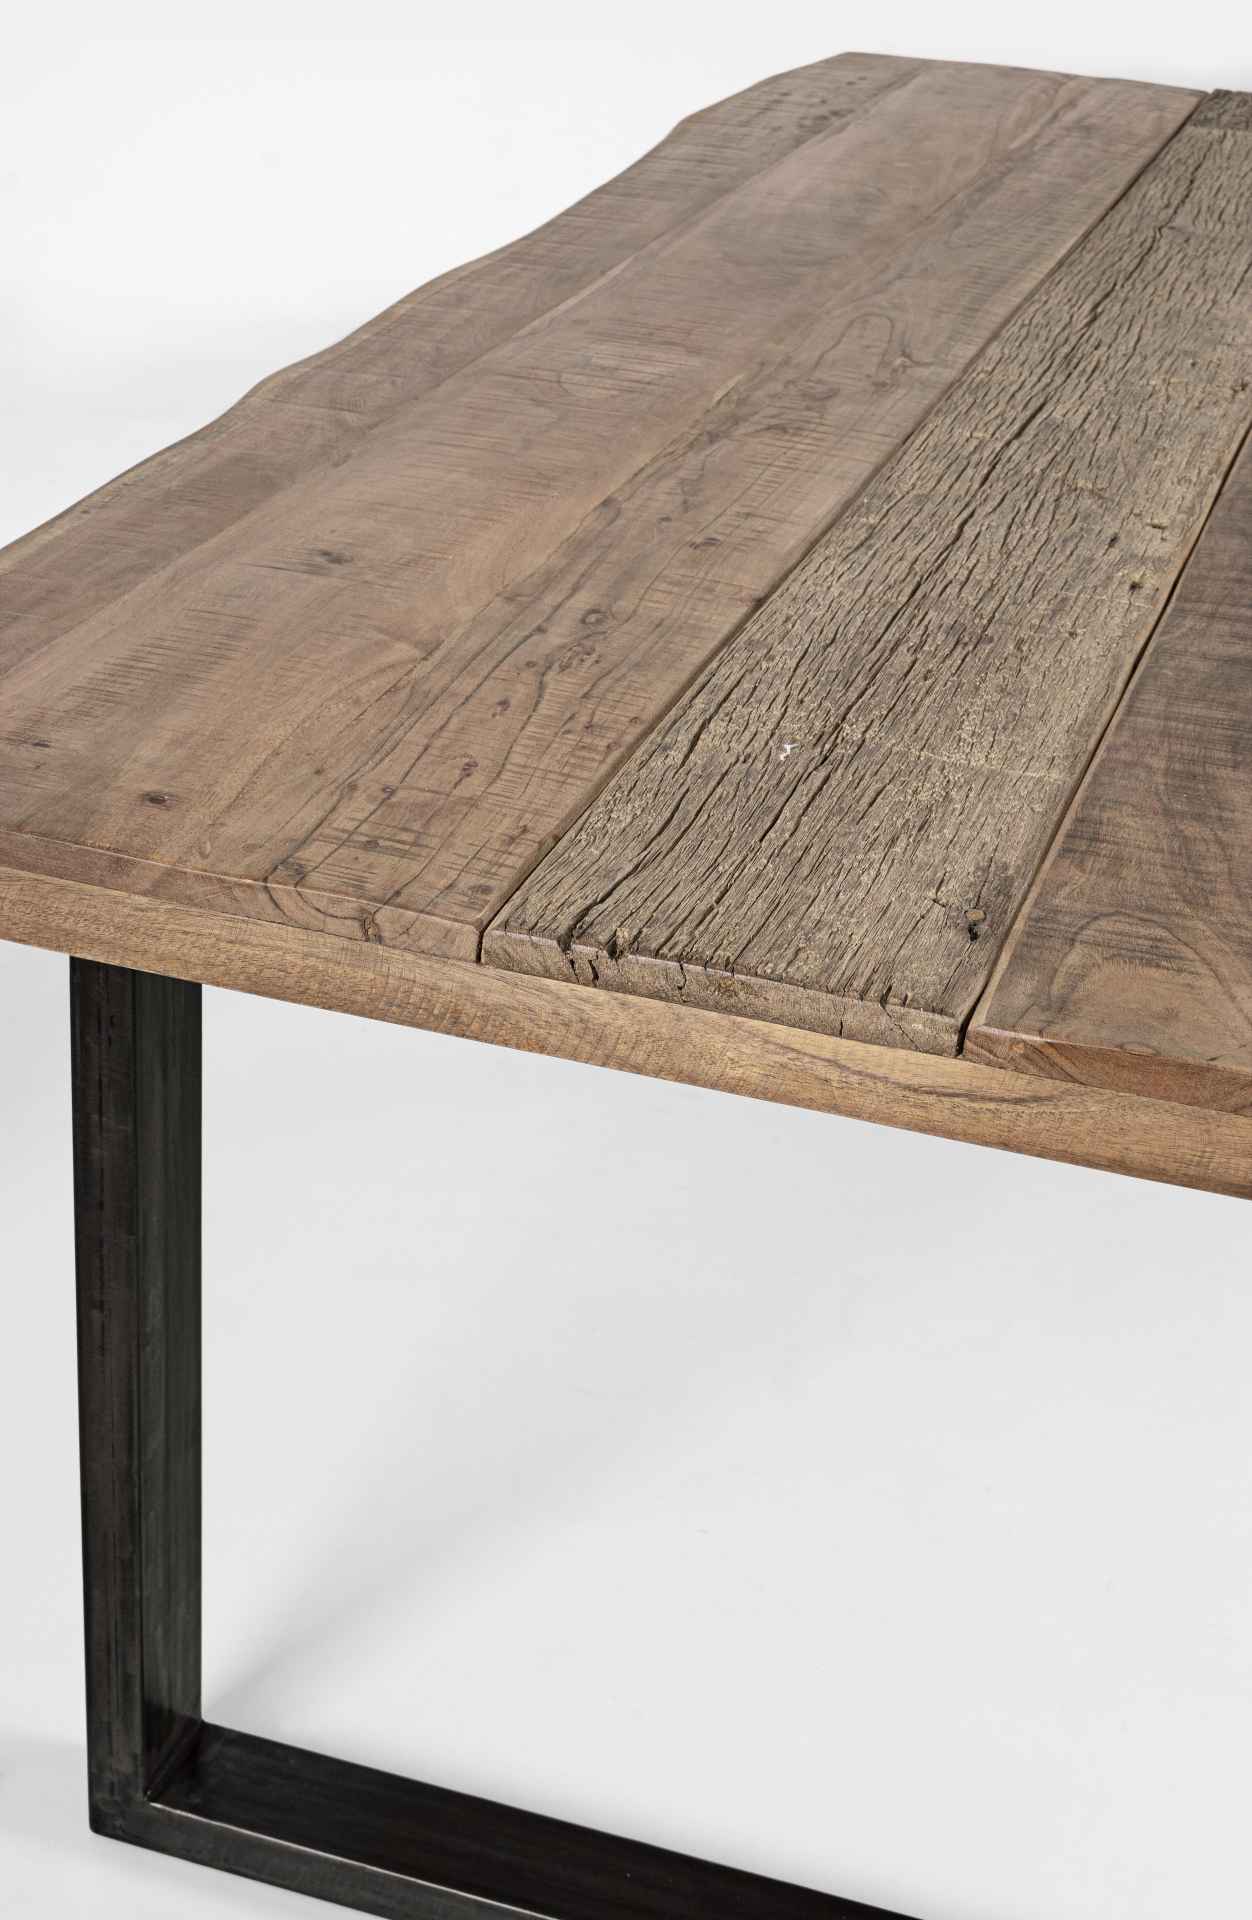 Der Esstisch Nottingham überzeugt mit seinem moderndem Design. Gefertigt wurde er aus Akazienholz, welches einen natürlichen Farbton besitzt. Das Gestell des Tisches ist aus Metall und ist in eine schwarze Farbe. Der Tisch besitzt eine Breite von 220 cm.